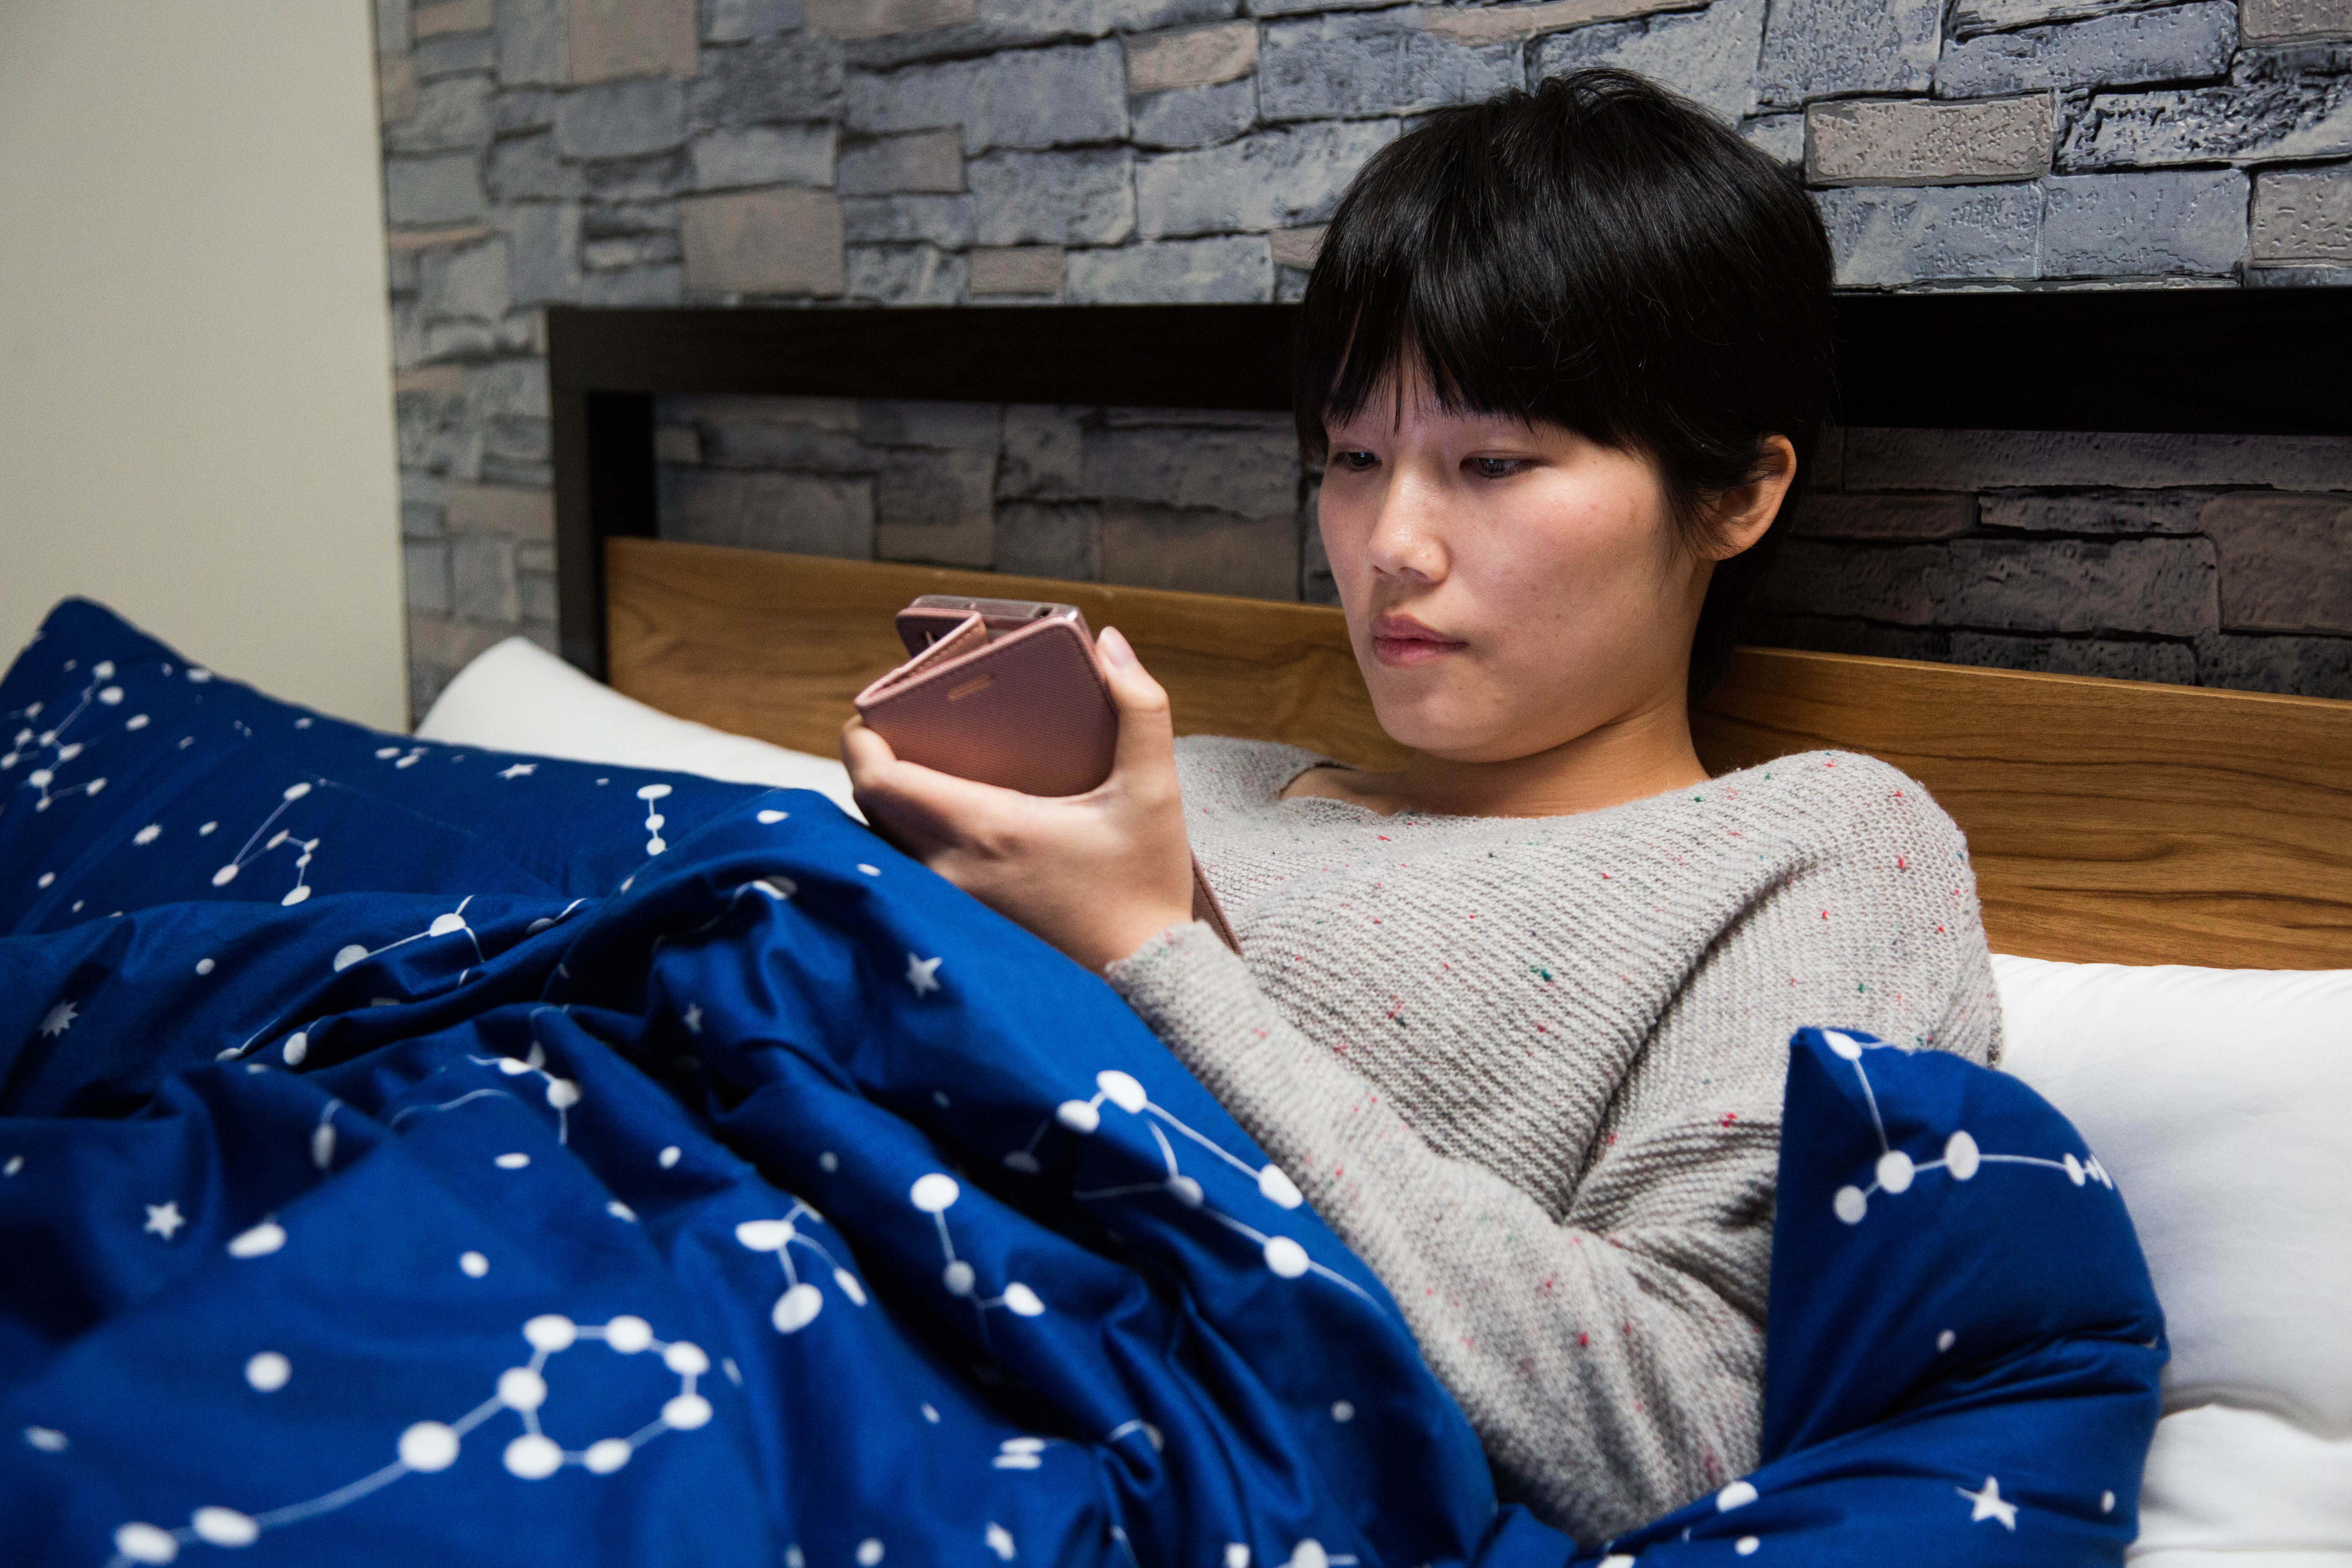 睡前最好不要使用智慧型手機或其他電子螢幕，以免影響睡眠品質。